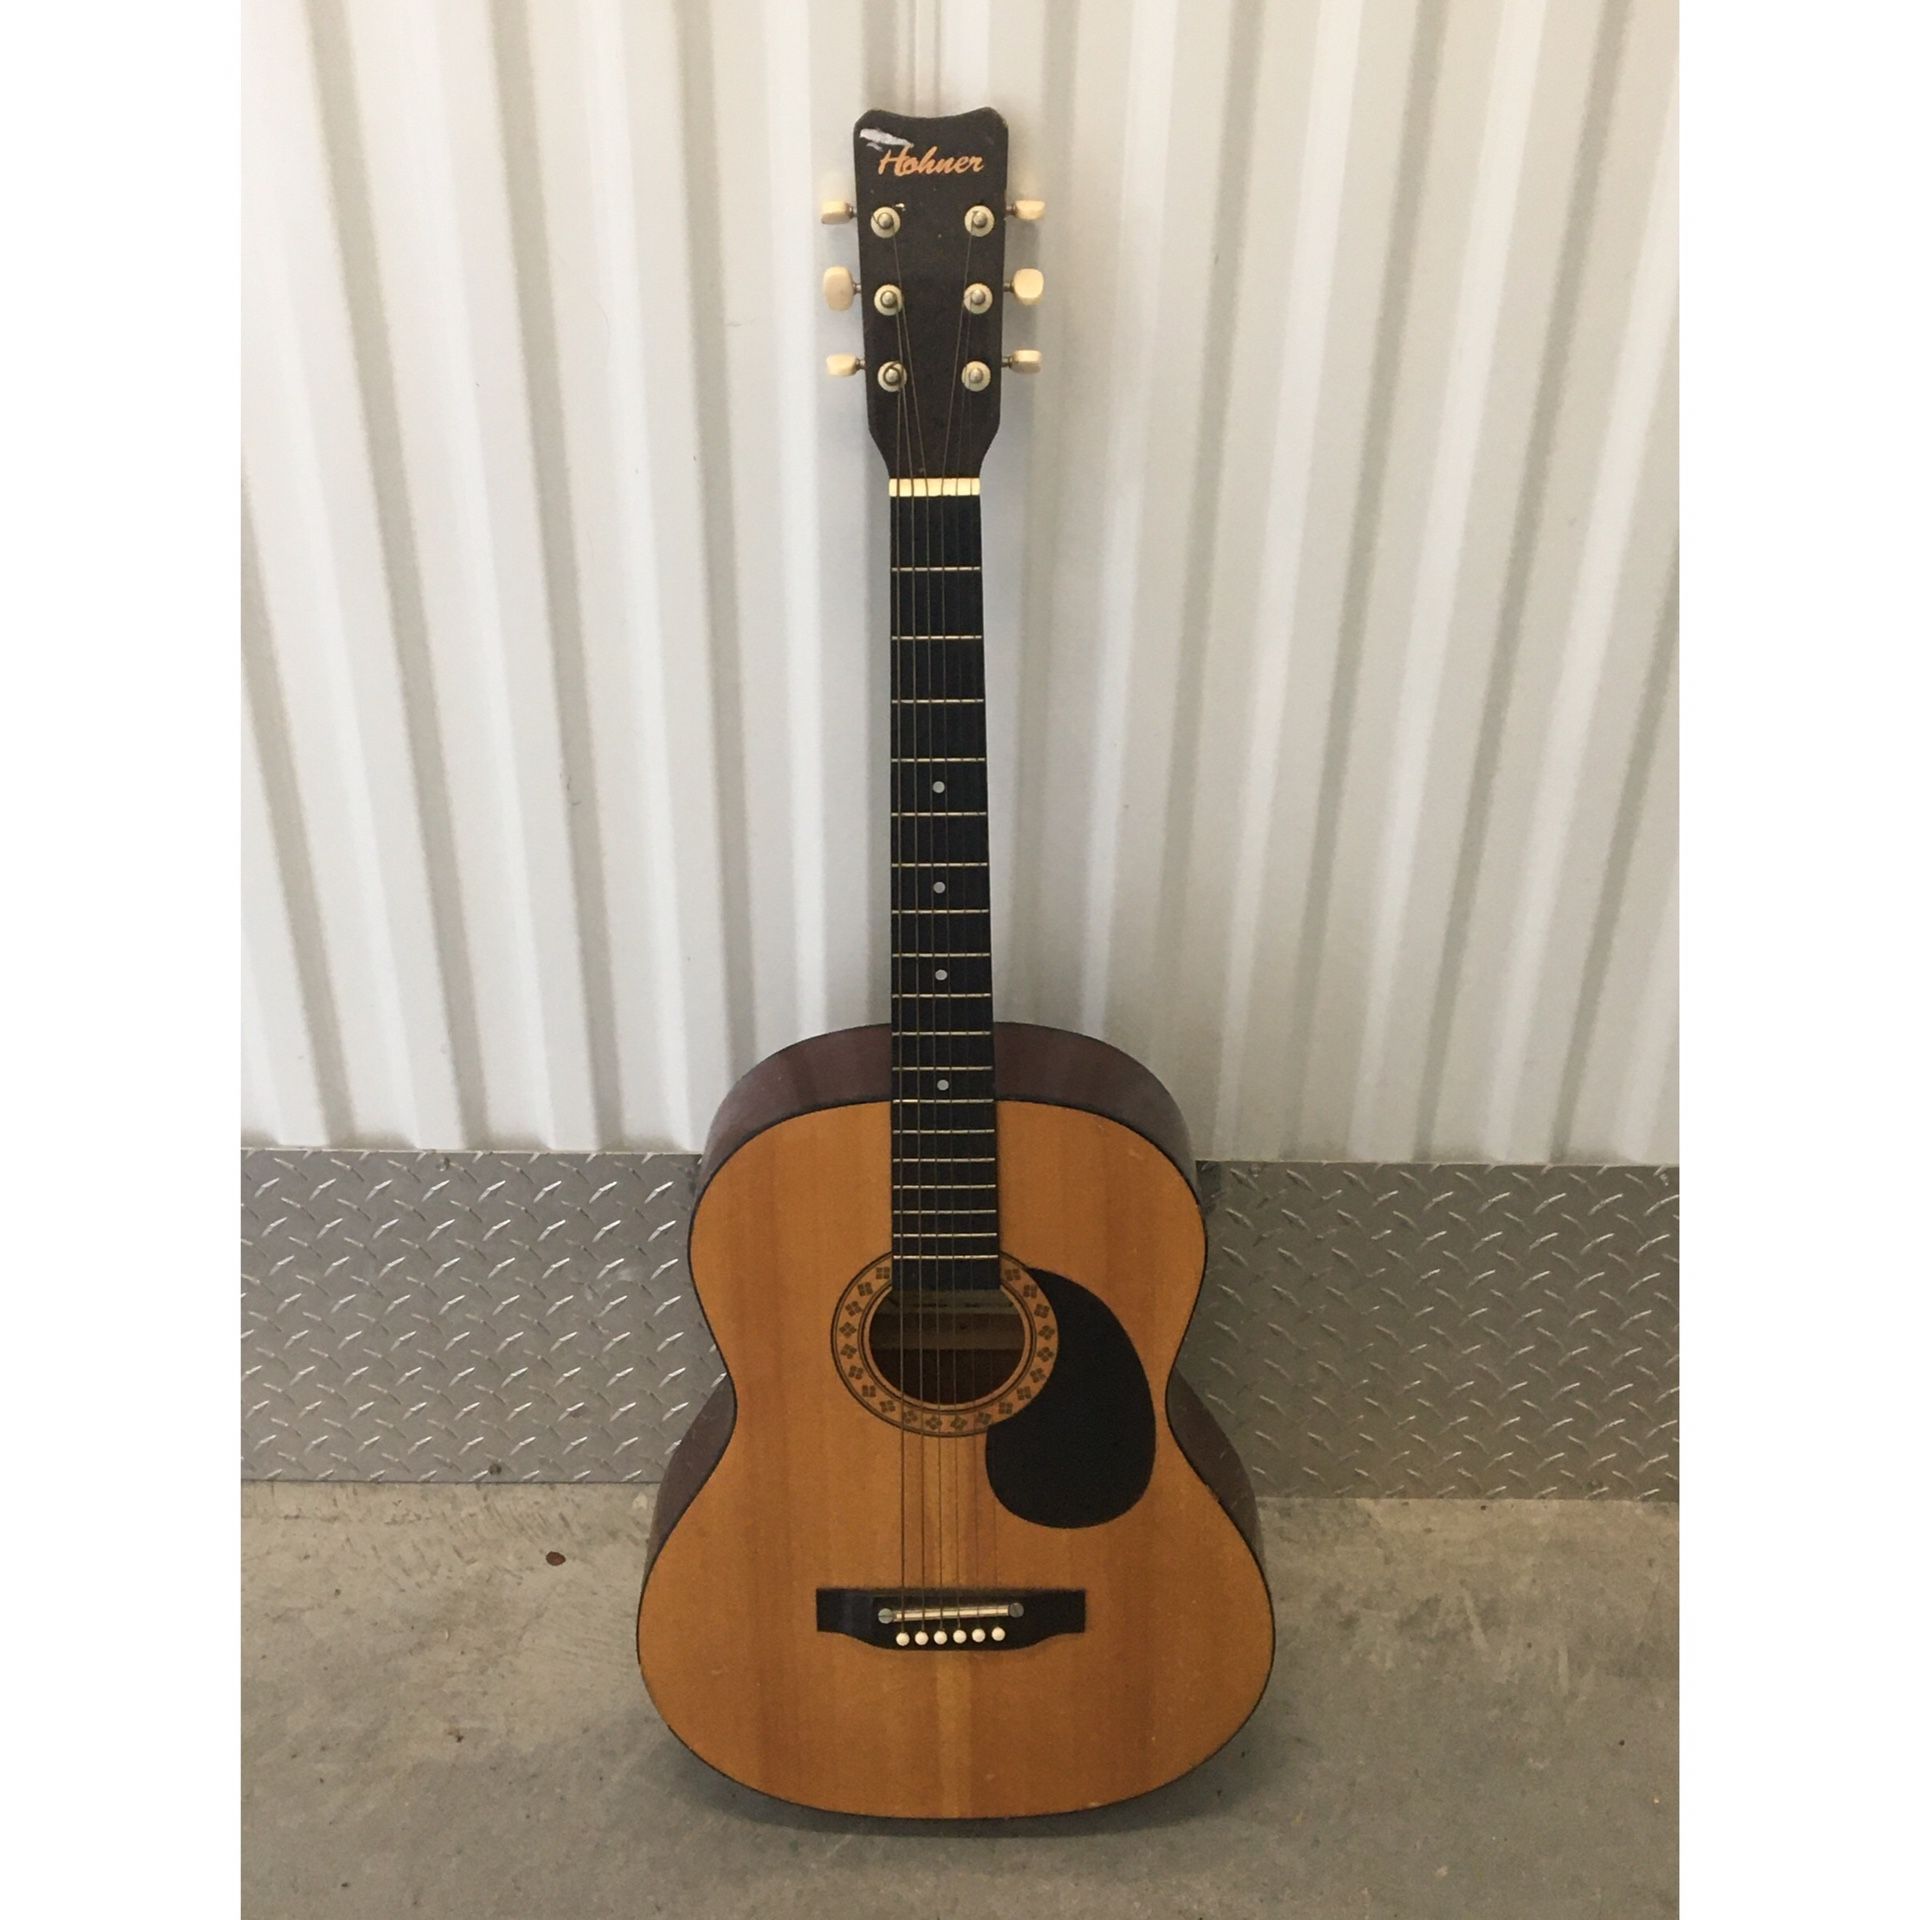 39” Hohner 6 String Acoustic Guitar Model HW-200